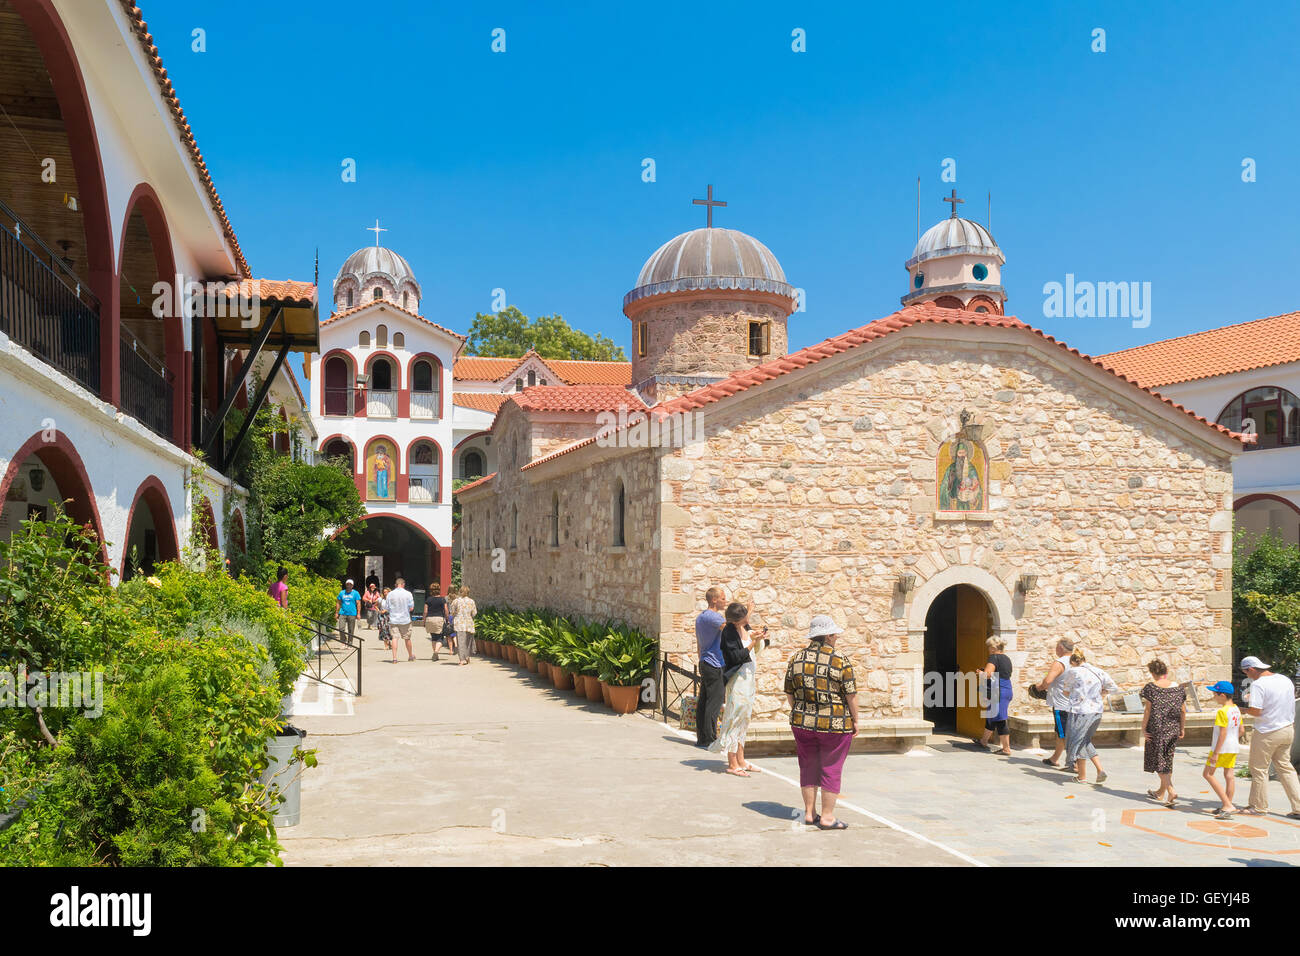 Evia, Grecia el 25 de julio de 201. Gente de todo el mundo visitando el famoso monasterio de San David en Evia. Foto de stock